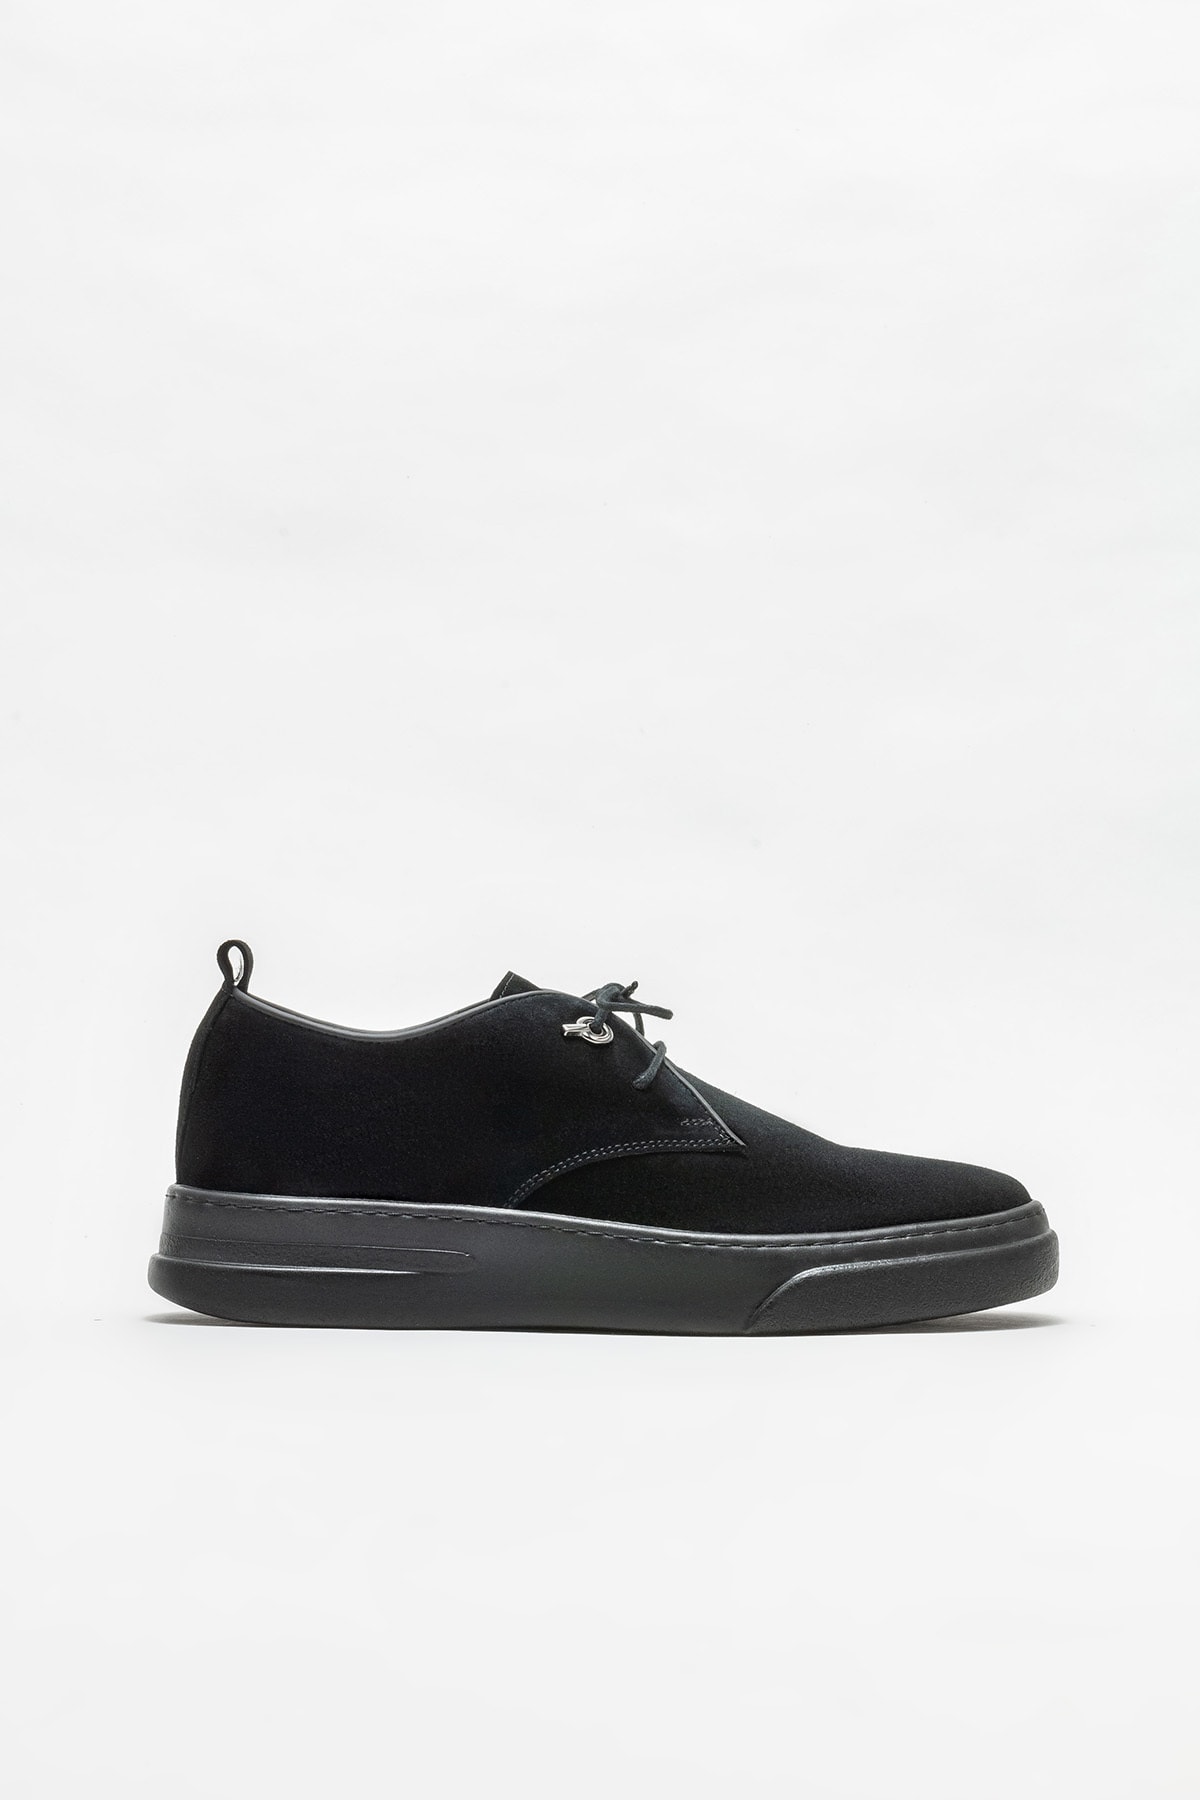 Elle Shoes Siyah Deri Erkek Günlük Ayakkabı